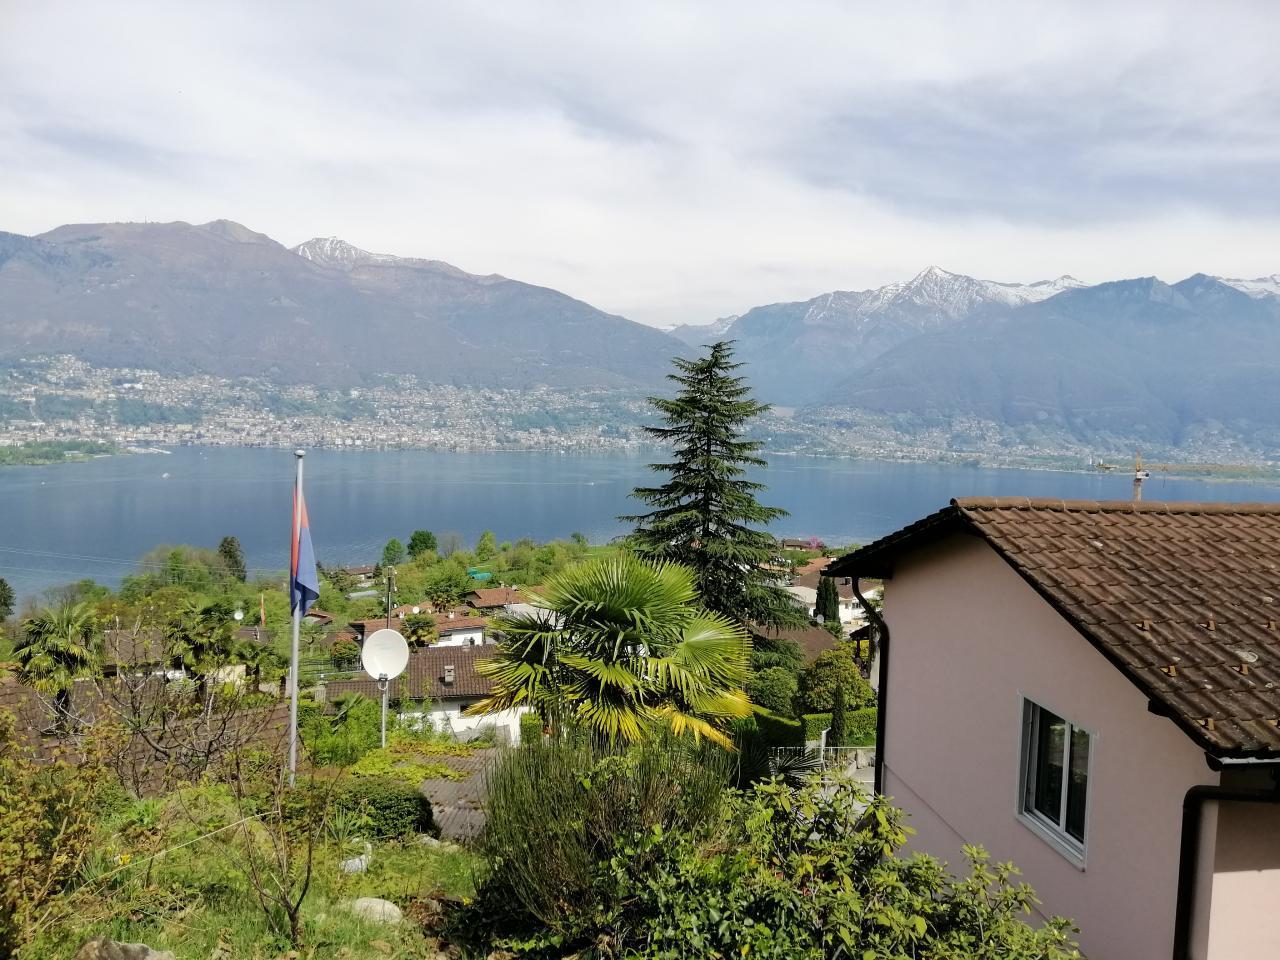 "Traumhafter Blick" auf Lago Maggiore un Ferienwohnung in der Schweiz